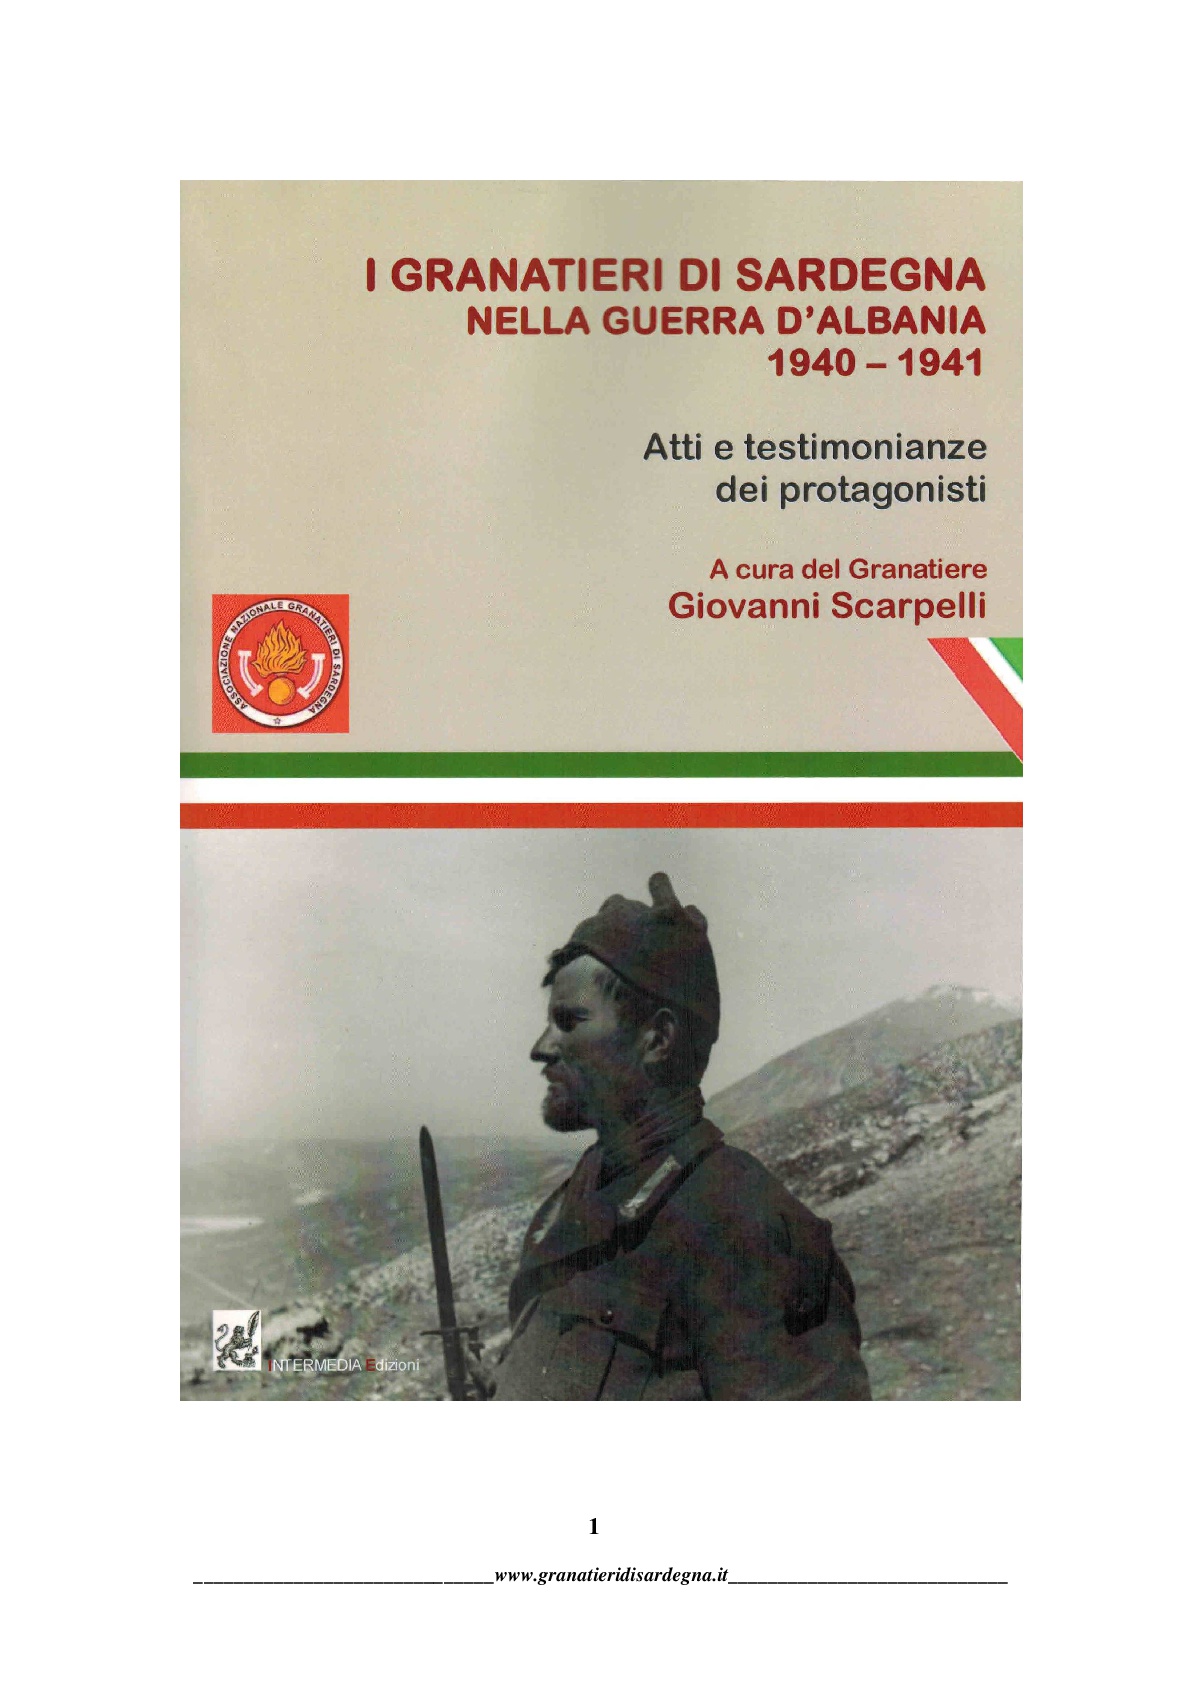  Galleria fotografica - Granatieri di Sardegna-nella guerra d'Albania 1940/1941